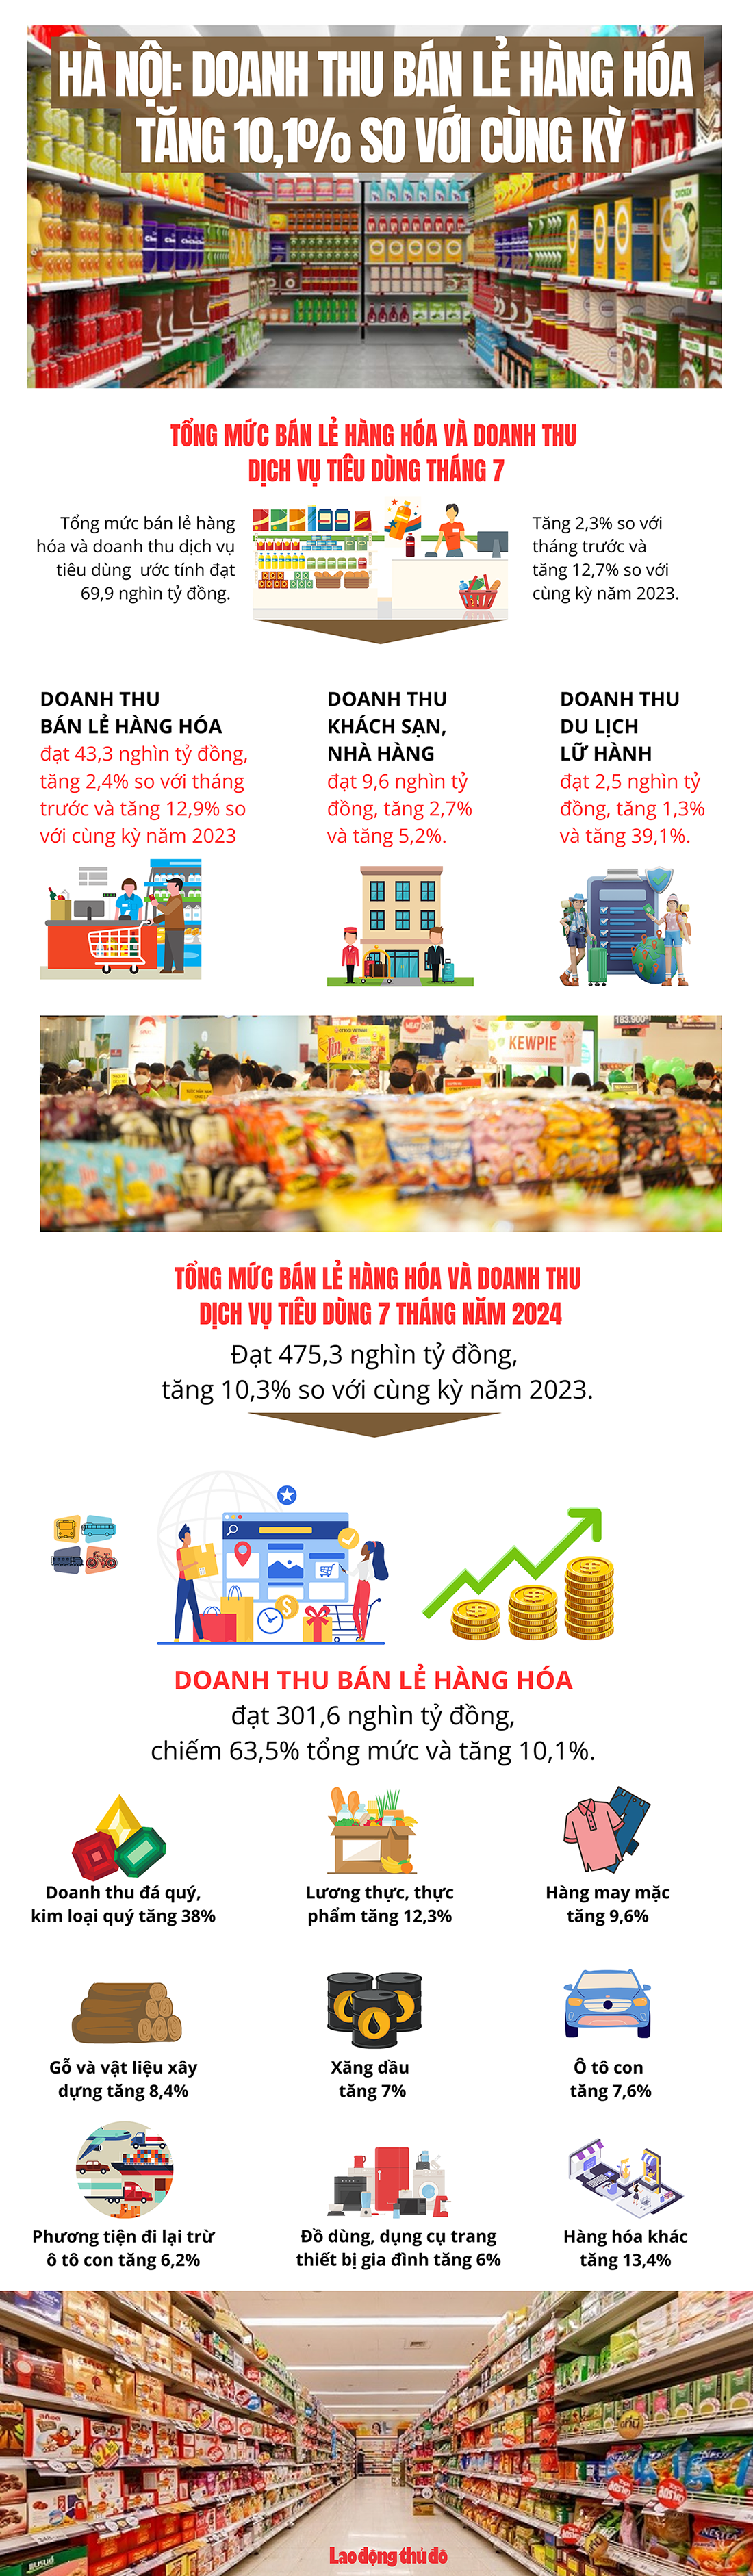 Hà Nội: Doanh thu bán lẻ hàng hóa tăng 10,1% so với cùng kỳ